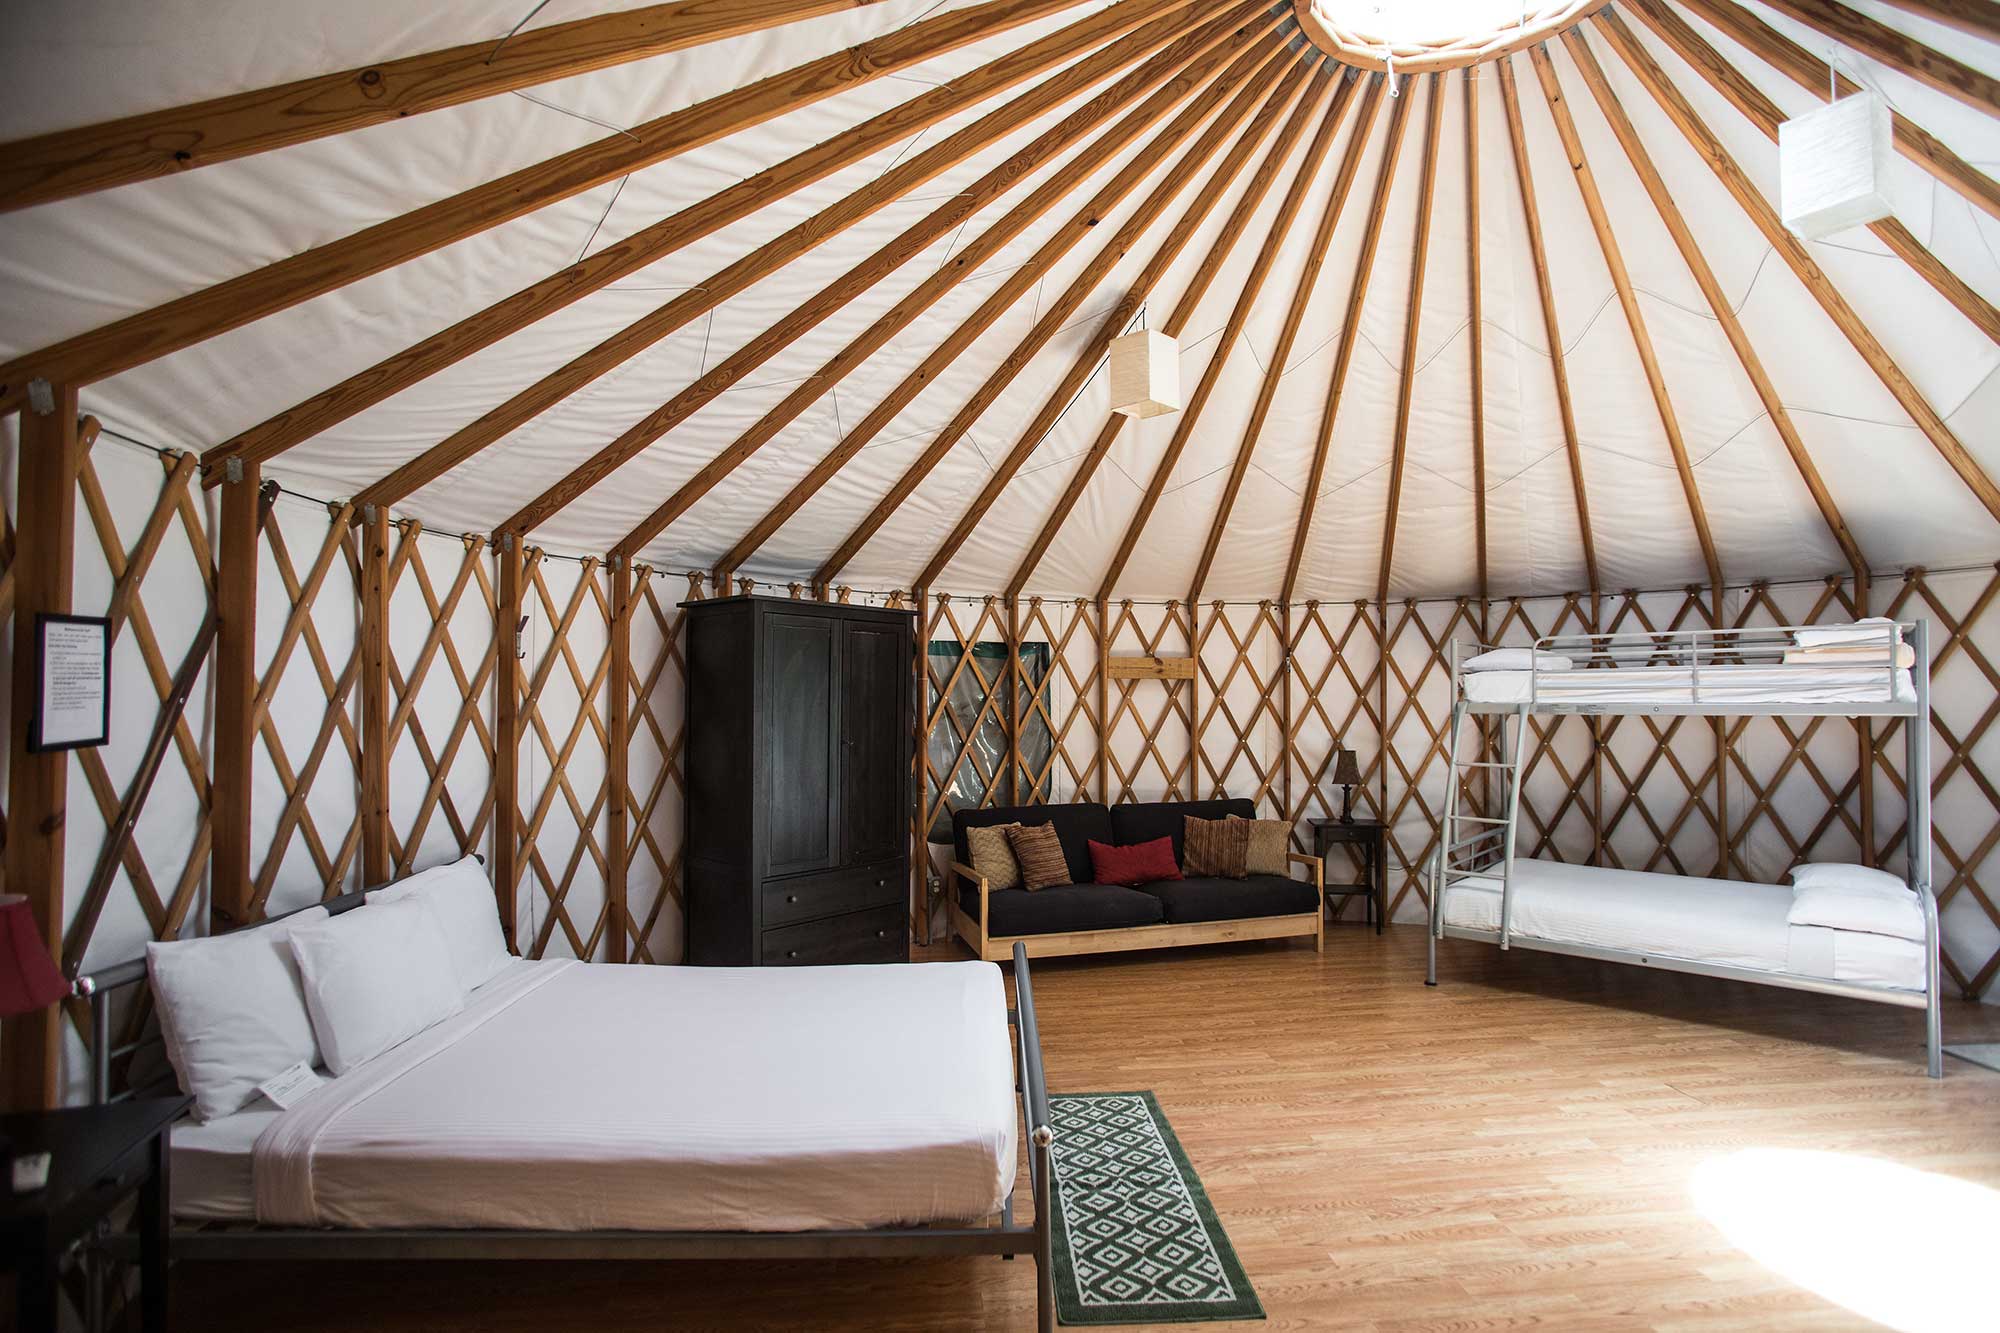 pine-mountain-yurt-camping-lagrange-georgia